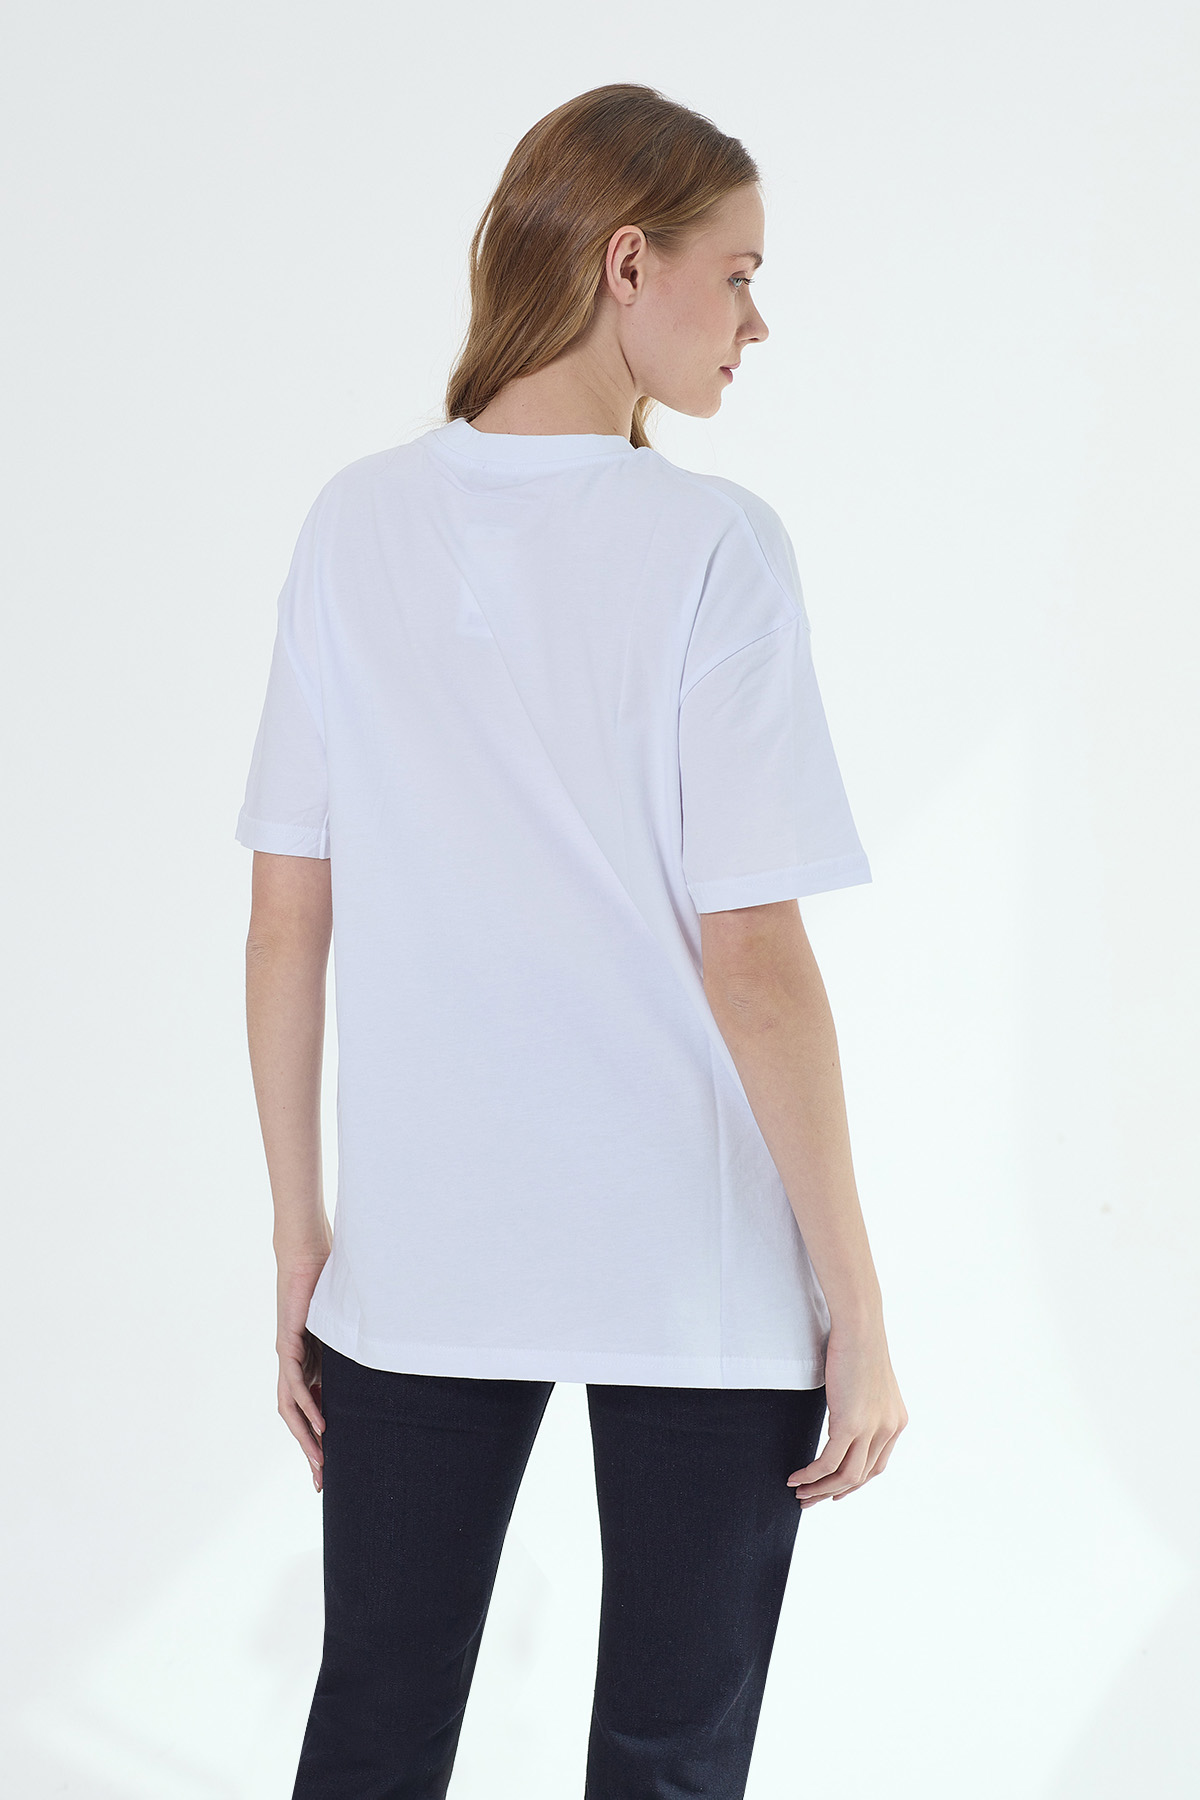 Denigma AR Kadın Handy Regular Fit Beyaz Tshirt